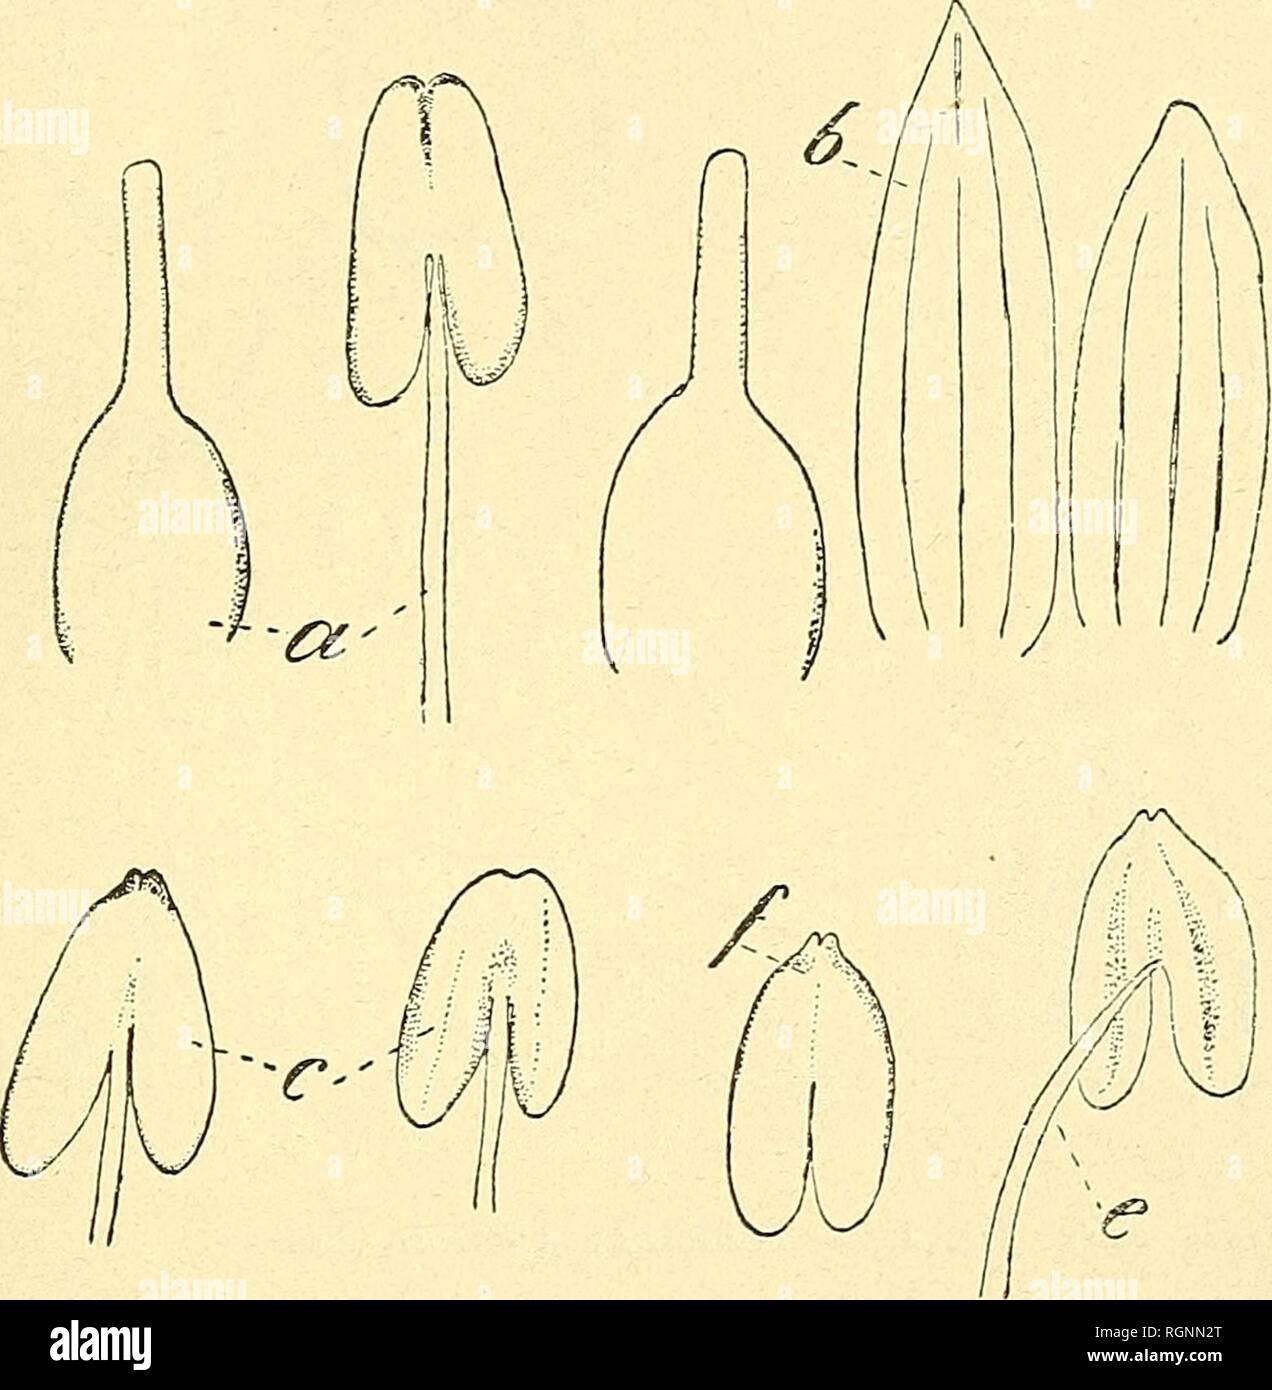 . Bulletin de l'Herbier Boissier. Plants. (ä) R. CHOÜAT. GENRES SGOPARIA L. ET HASSLERELLA CHOD. Scoparia purpurea de Ridley (Journ. Linn. Soc. XXYII, 51 (1890). Paraît distinct par sa corolle peu barbue ou corolle presque nue. v. 1. c. C'est une plante de Fernando Noronha : Rat island.. Fig. 2. — SCOPARIA NUDICAULIS Chod. a. Pistil et étamiue (Rojas, 137); b, pistil et sépales (Hassl. 2593) c, anthères (Lorentz 2 79 = prœdensa Fries; f, c, anthère et étamine (Hassler 2 79 7). Scoparia Aemilii Chod. nov. spec. (Fig. 3). Annua, radice perpendiculari; e caudice oriunlur caules plures terrae circ Stock Photo